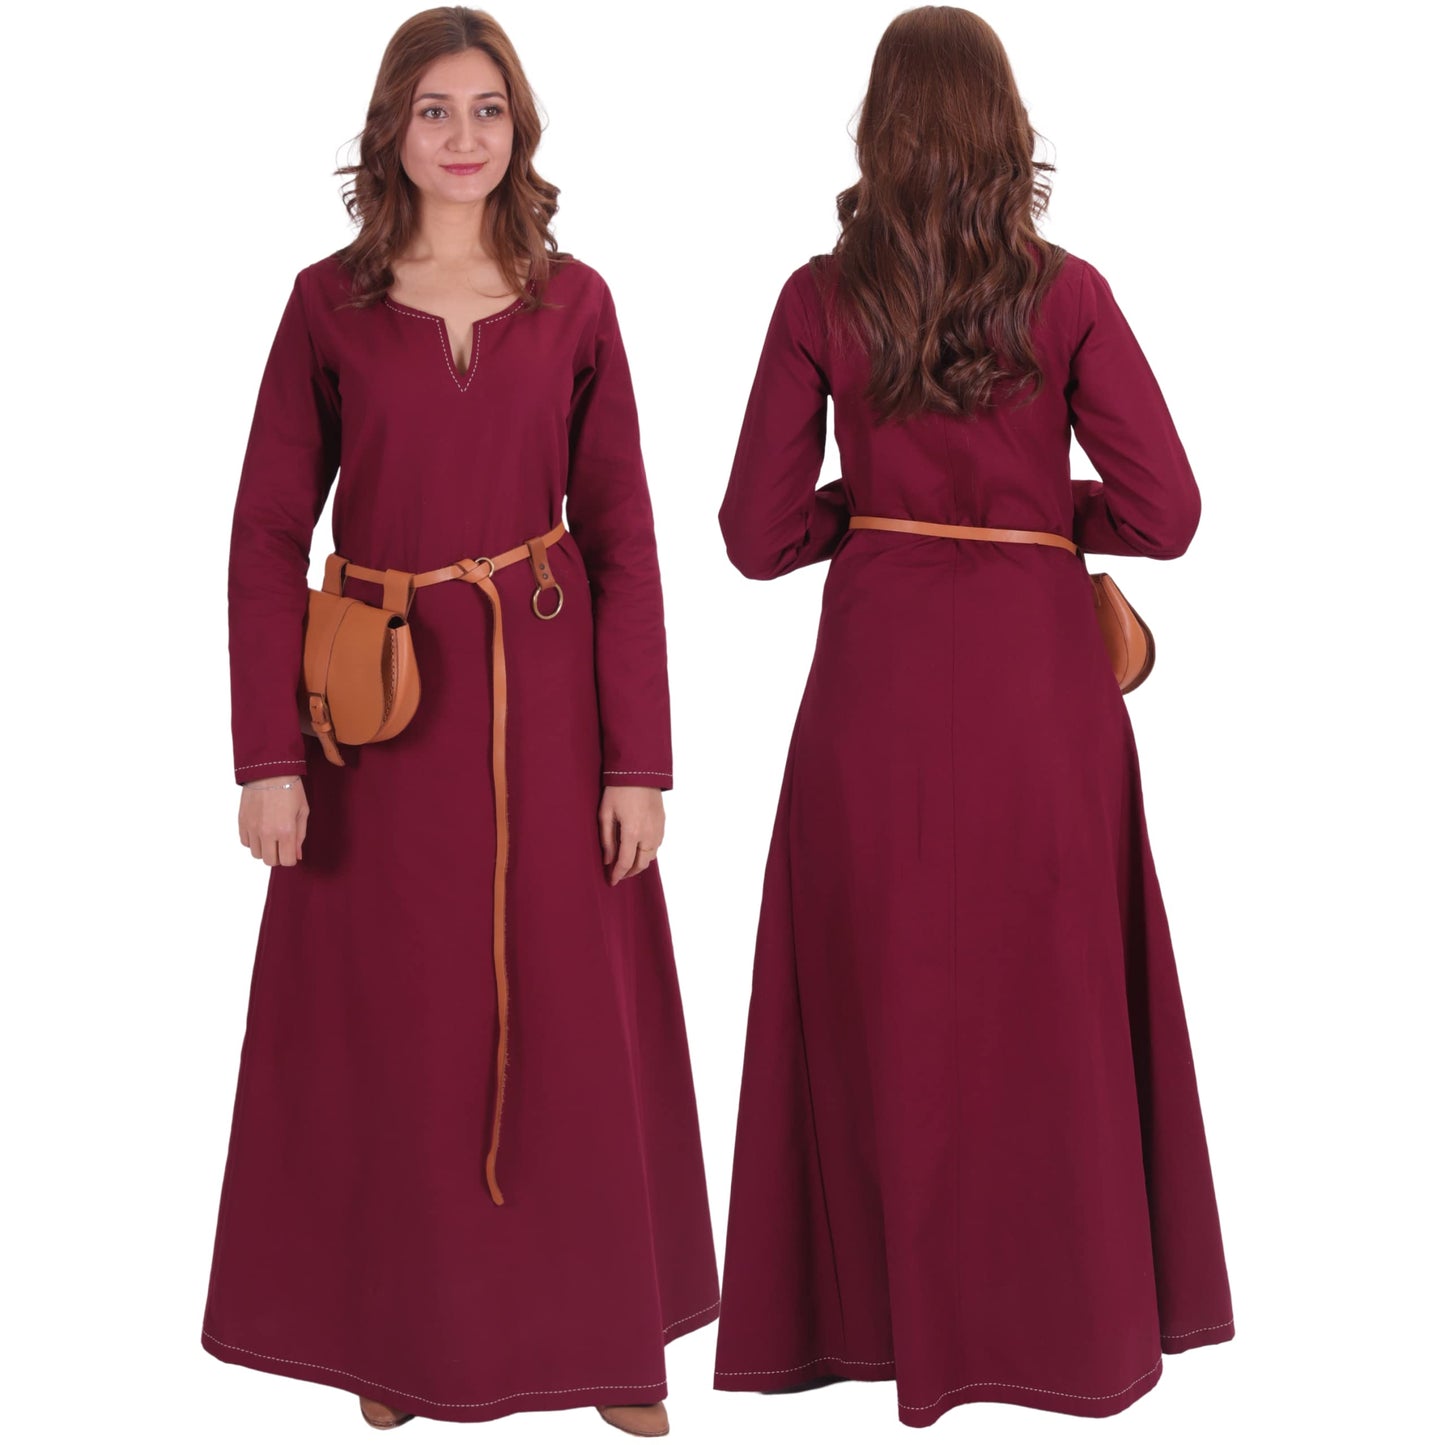 Turkish Made Natural Cotton Fraye Viking Medieval Women Dress